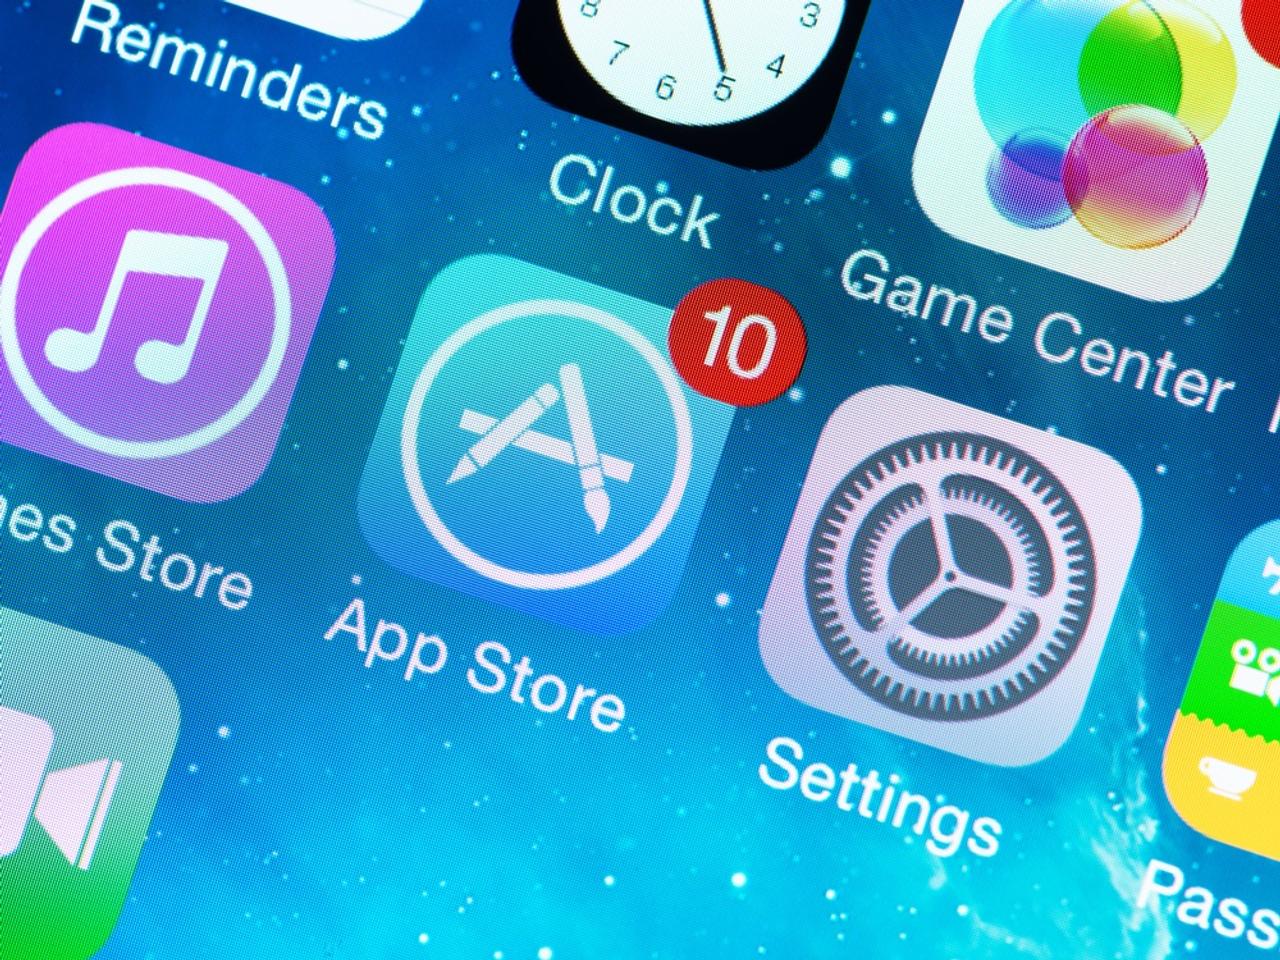 App Storeがアプリの予約ダウンロードに対応。ソシャゲスタートダッシュの心強い味方